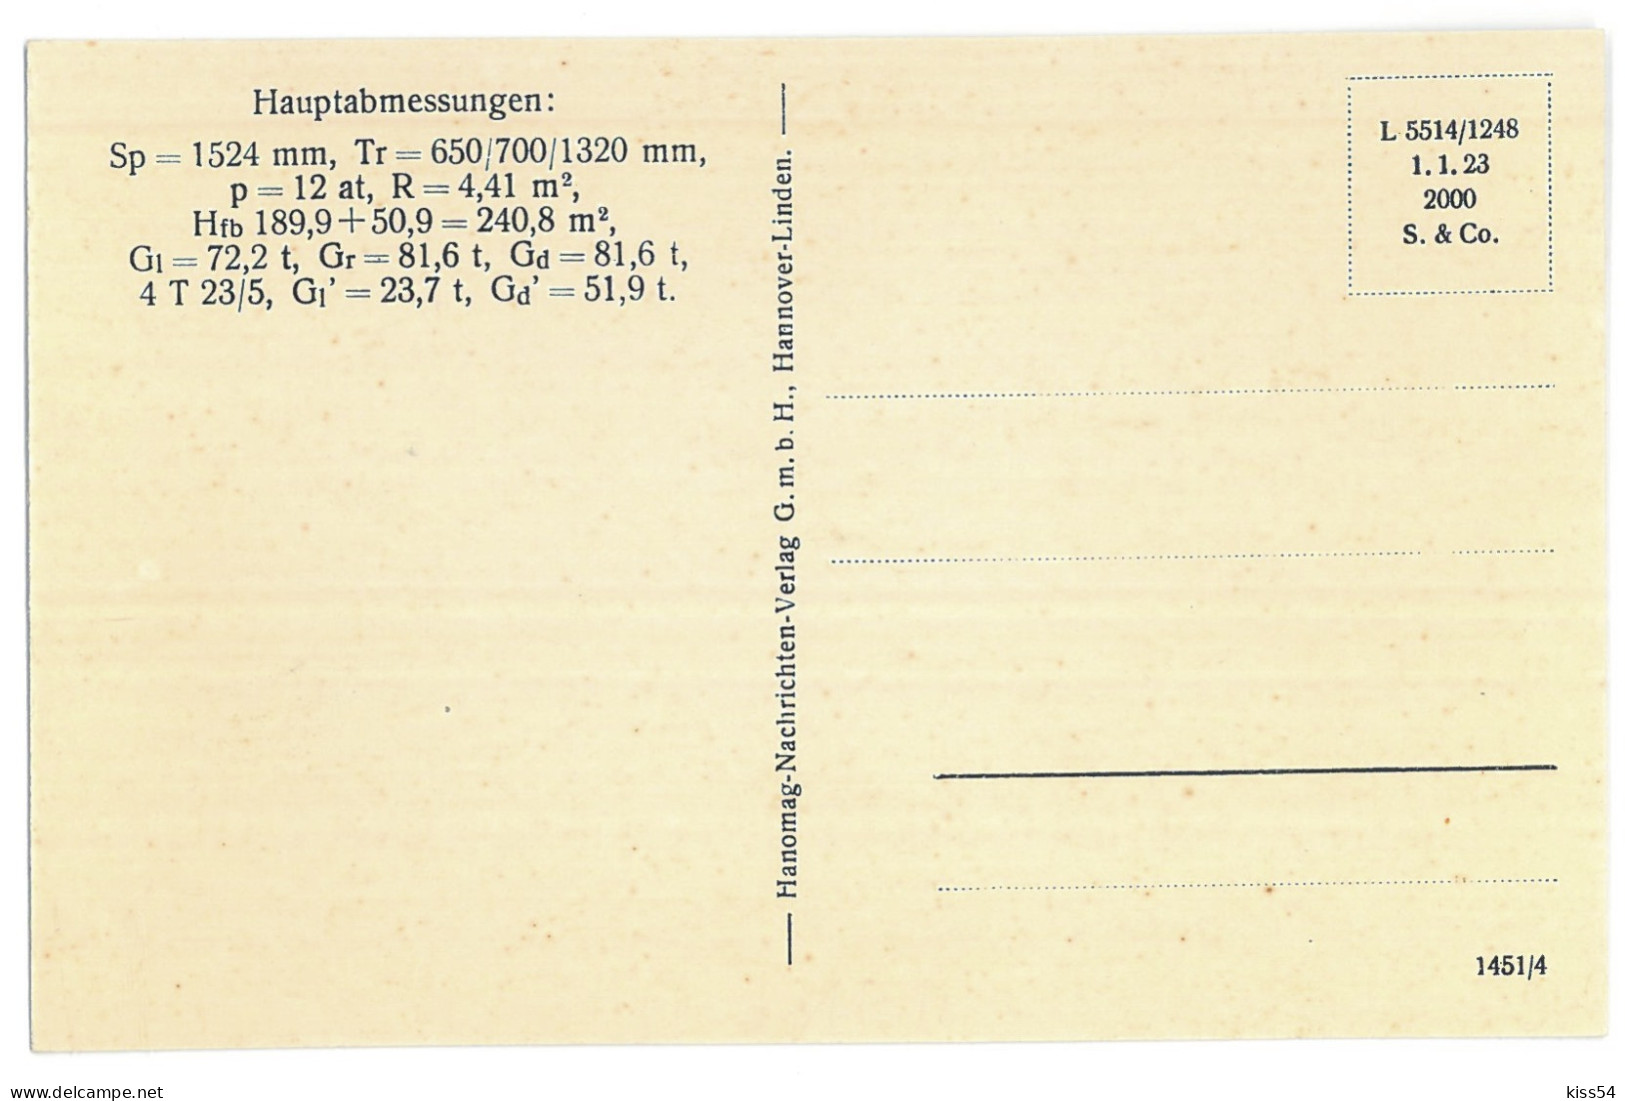 RUS 60 - 13676 LOCOMOTIVE, Russia - Old Postcard - Unused - Rusia